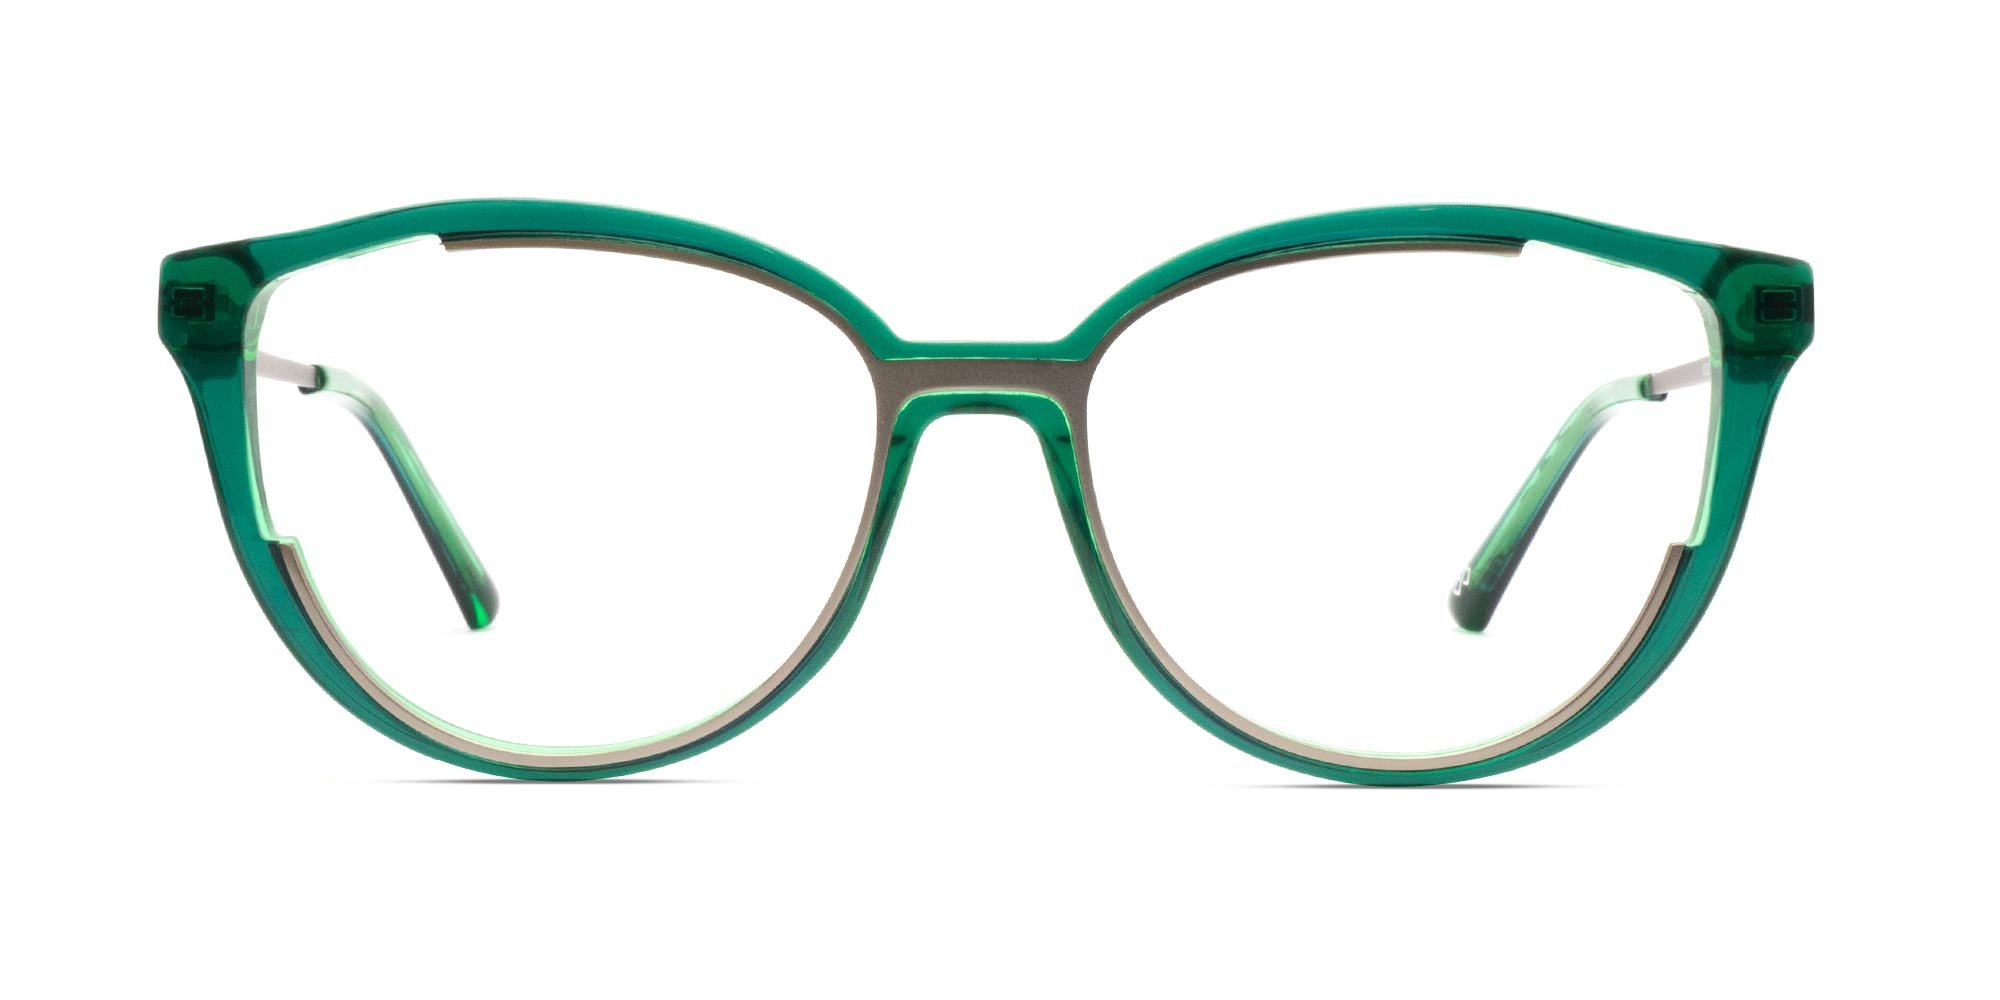 Designer Reading Glasses For Women-1